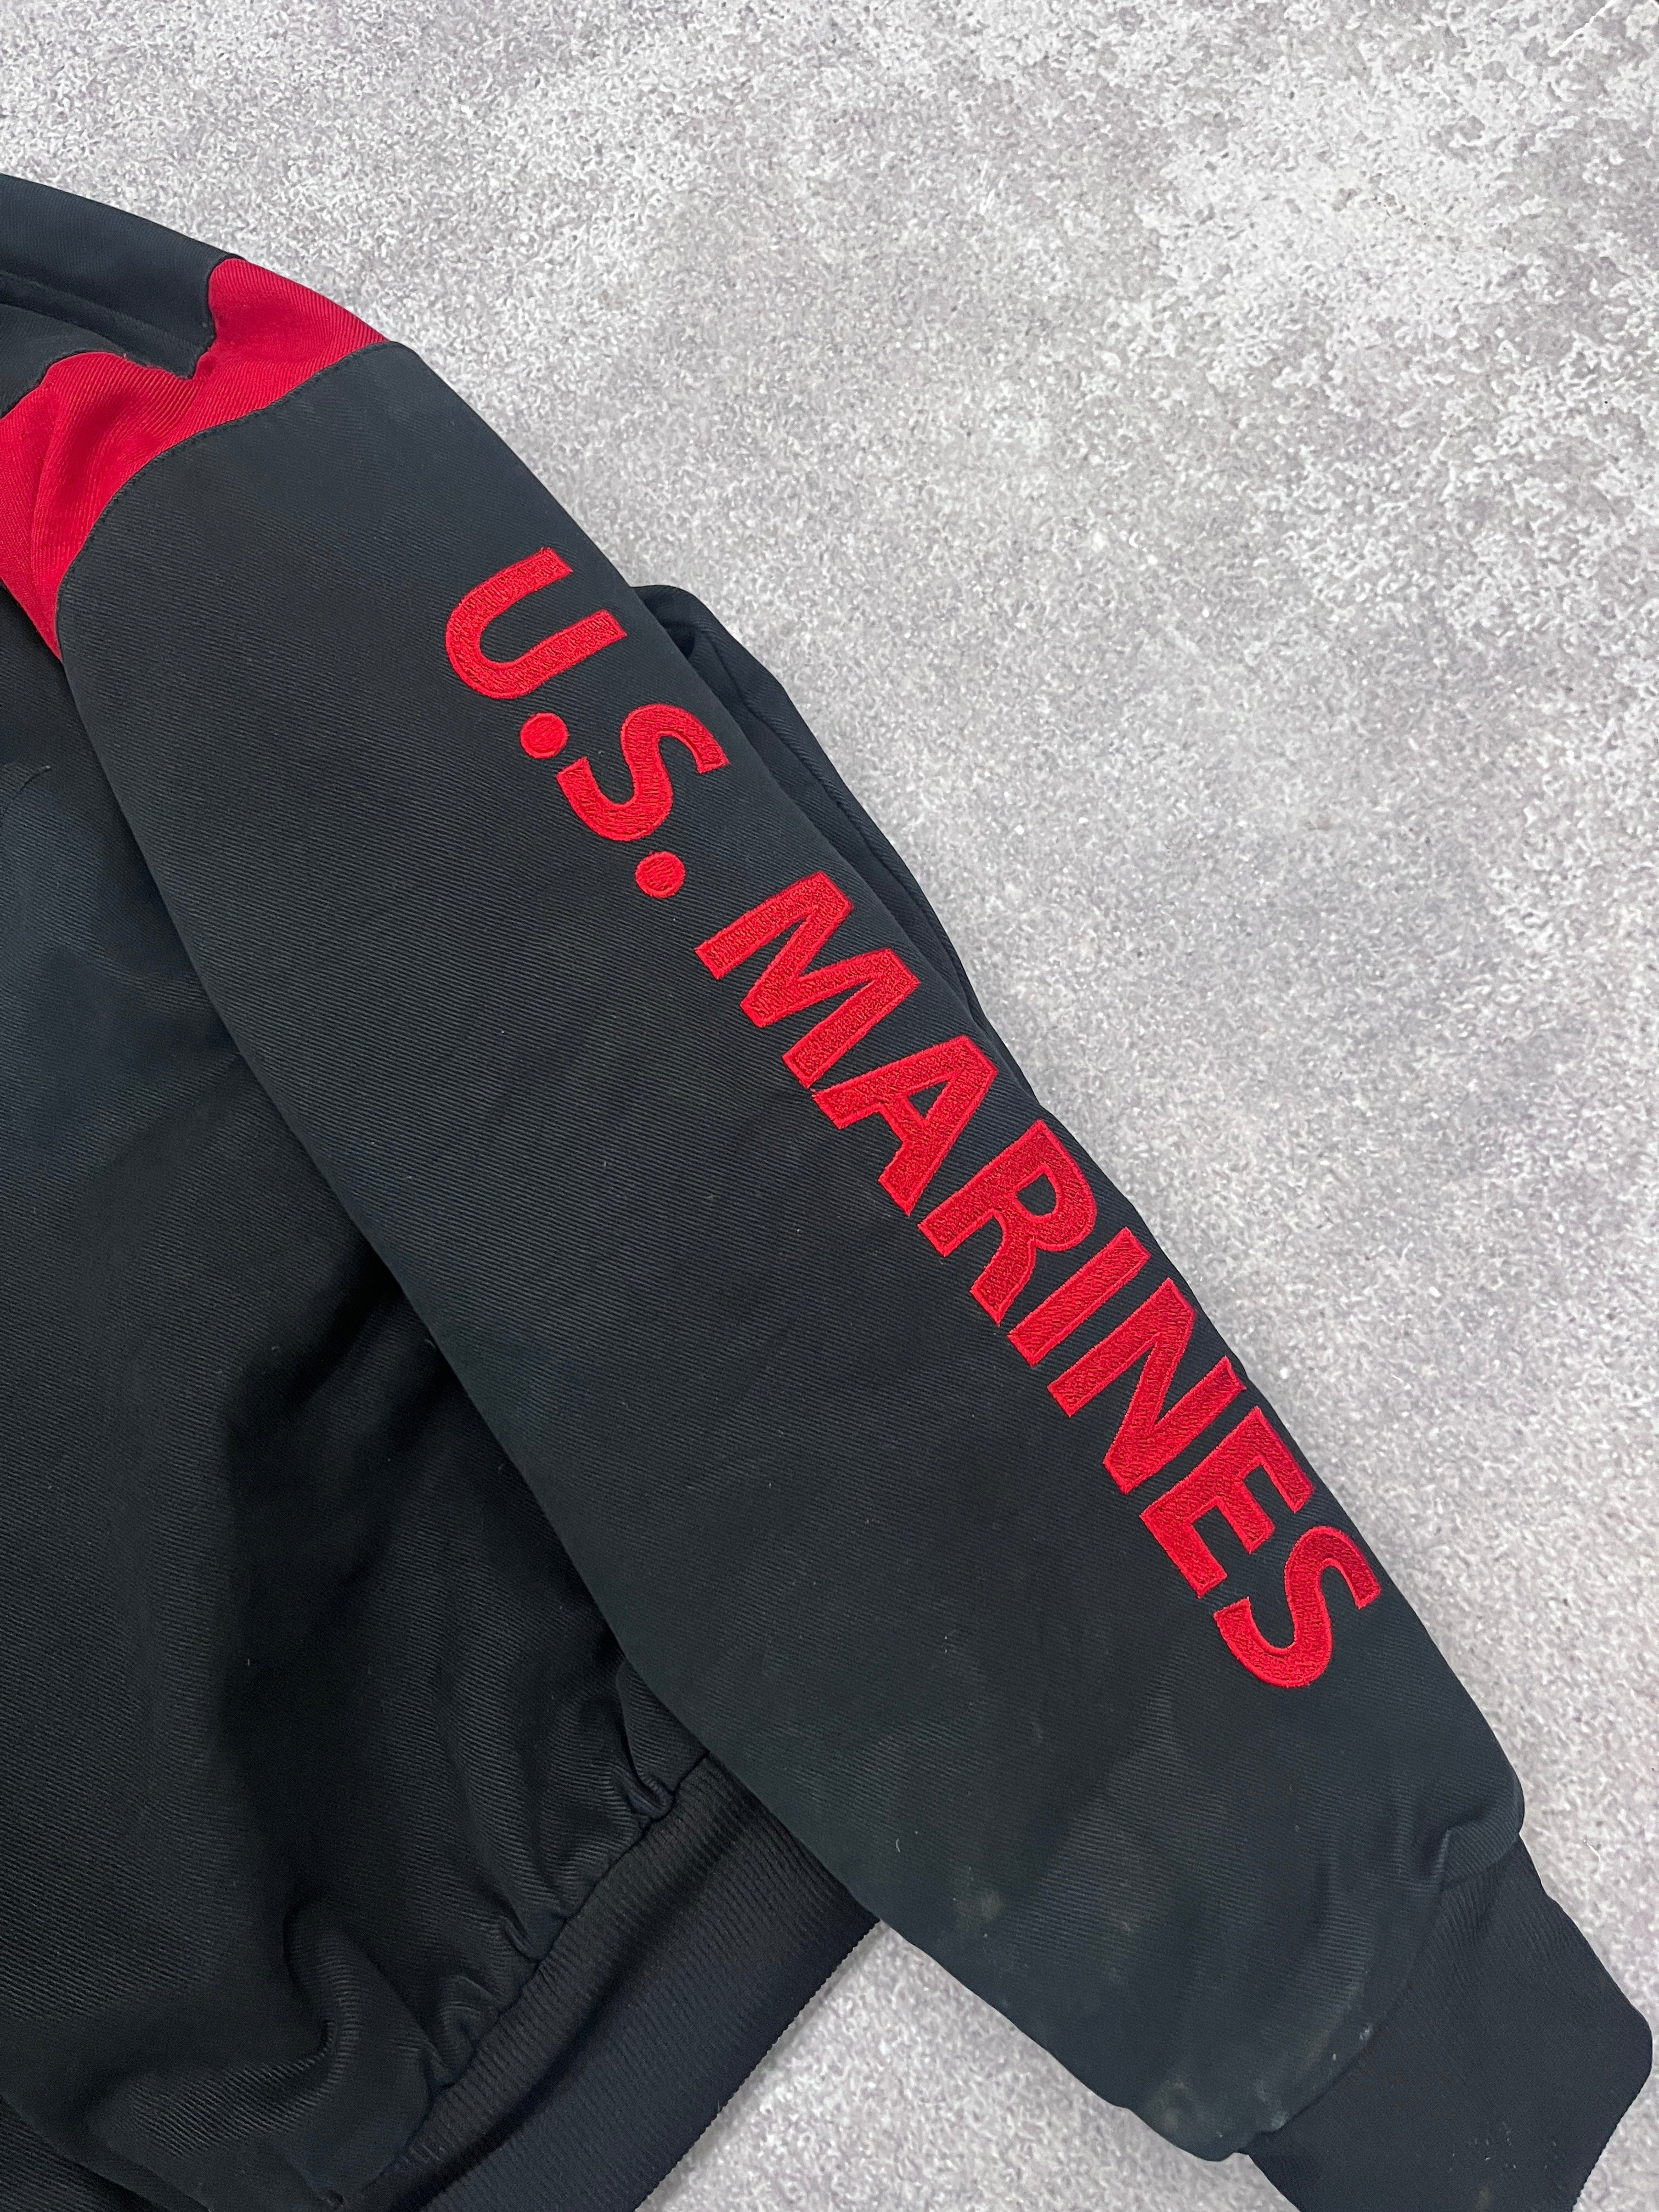 Vintage US Marines Jacket Black // Medium (Boxy) - RHAGHOUSE VINTAGE